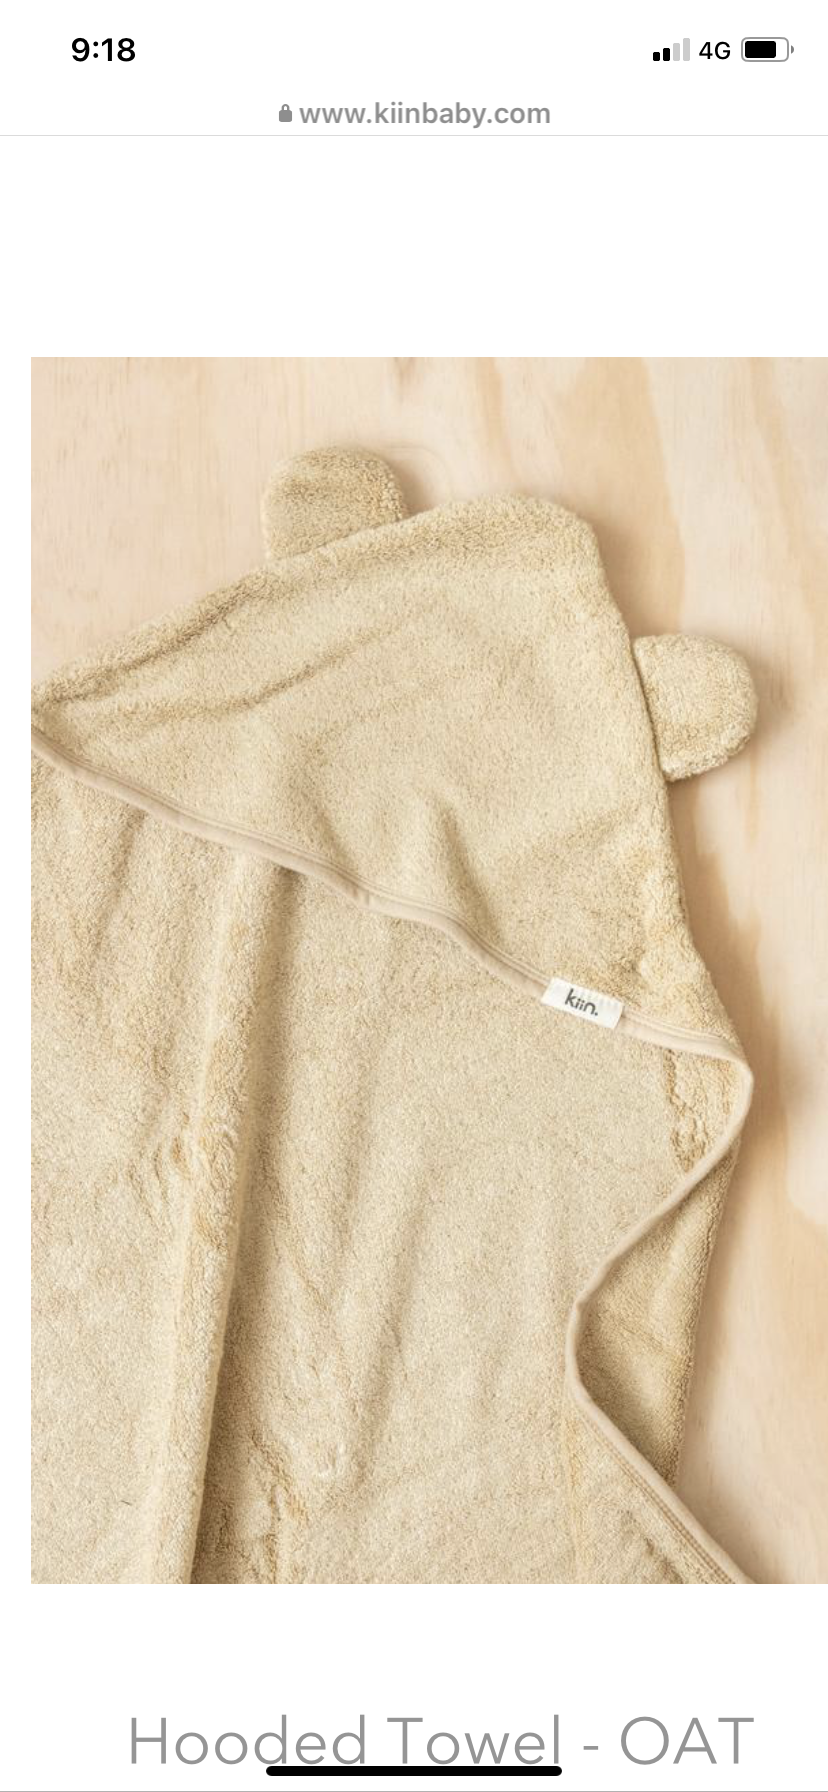 KIIN bamboo hooded towels